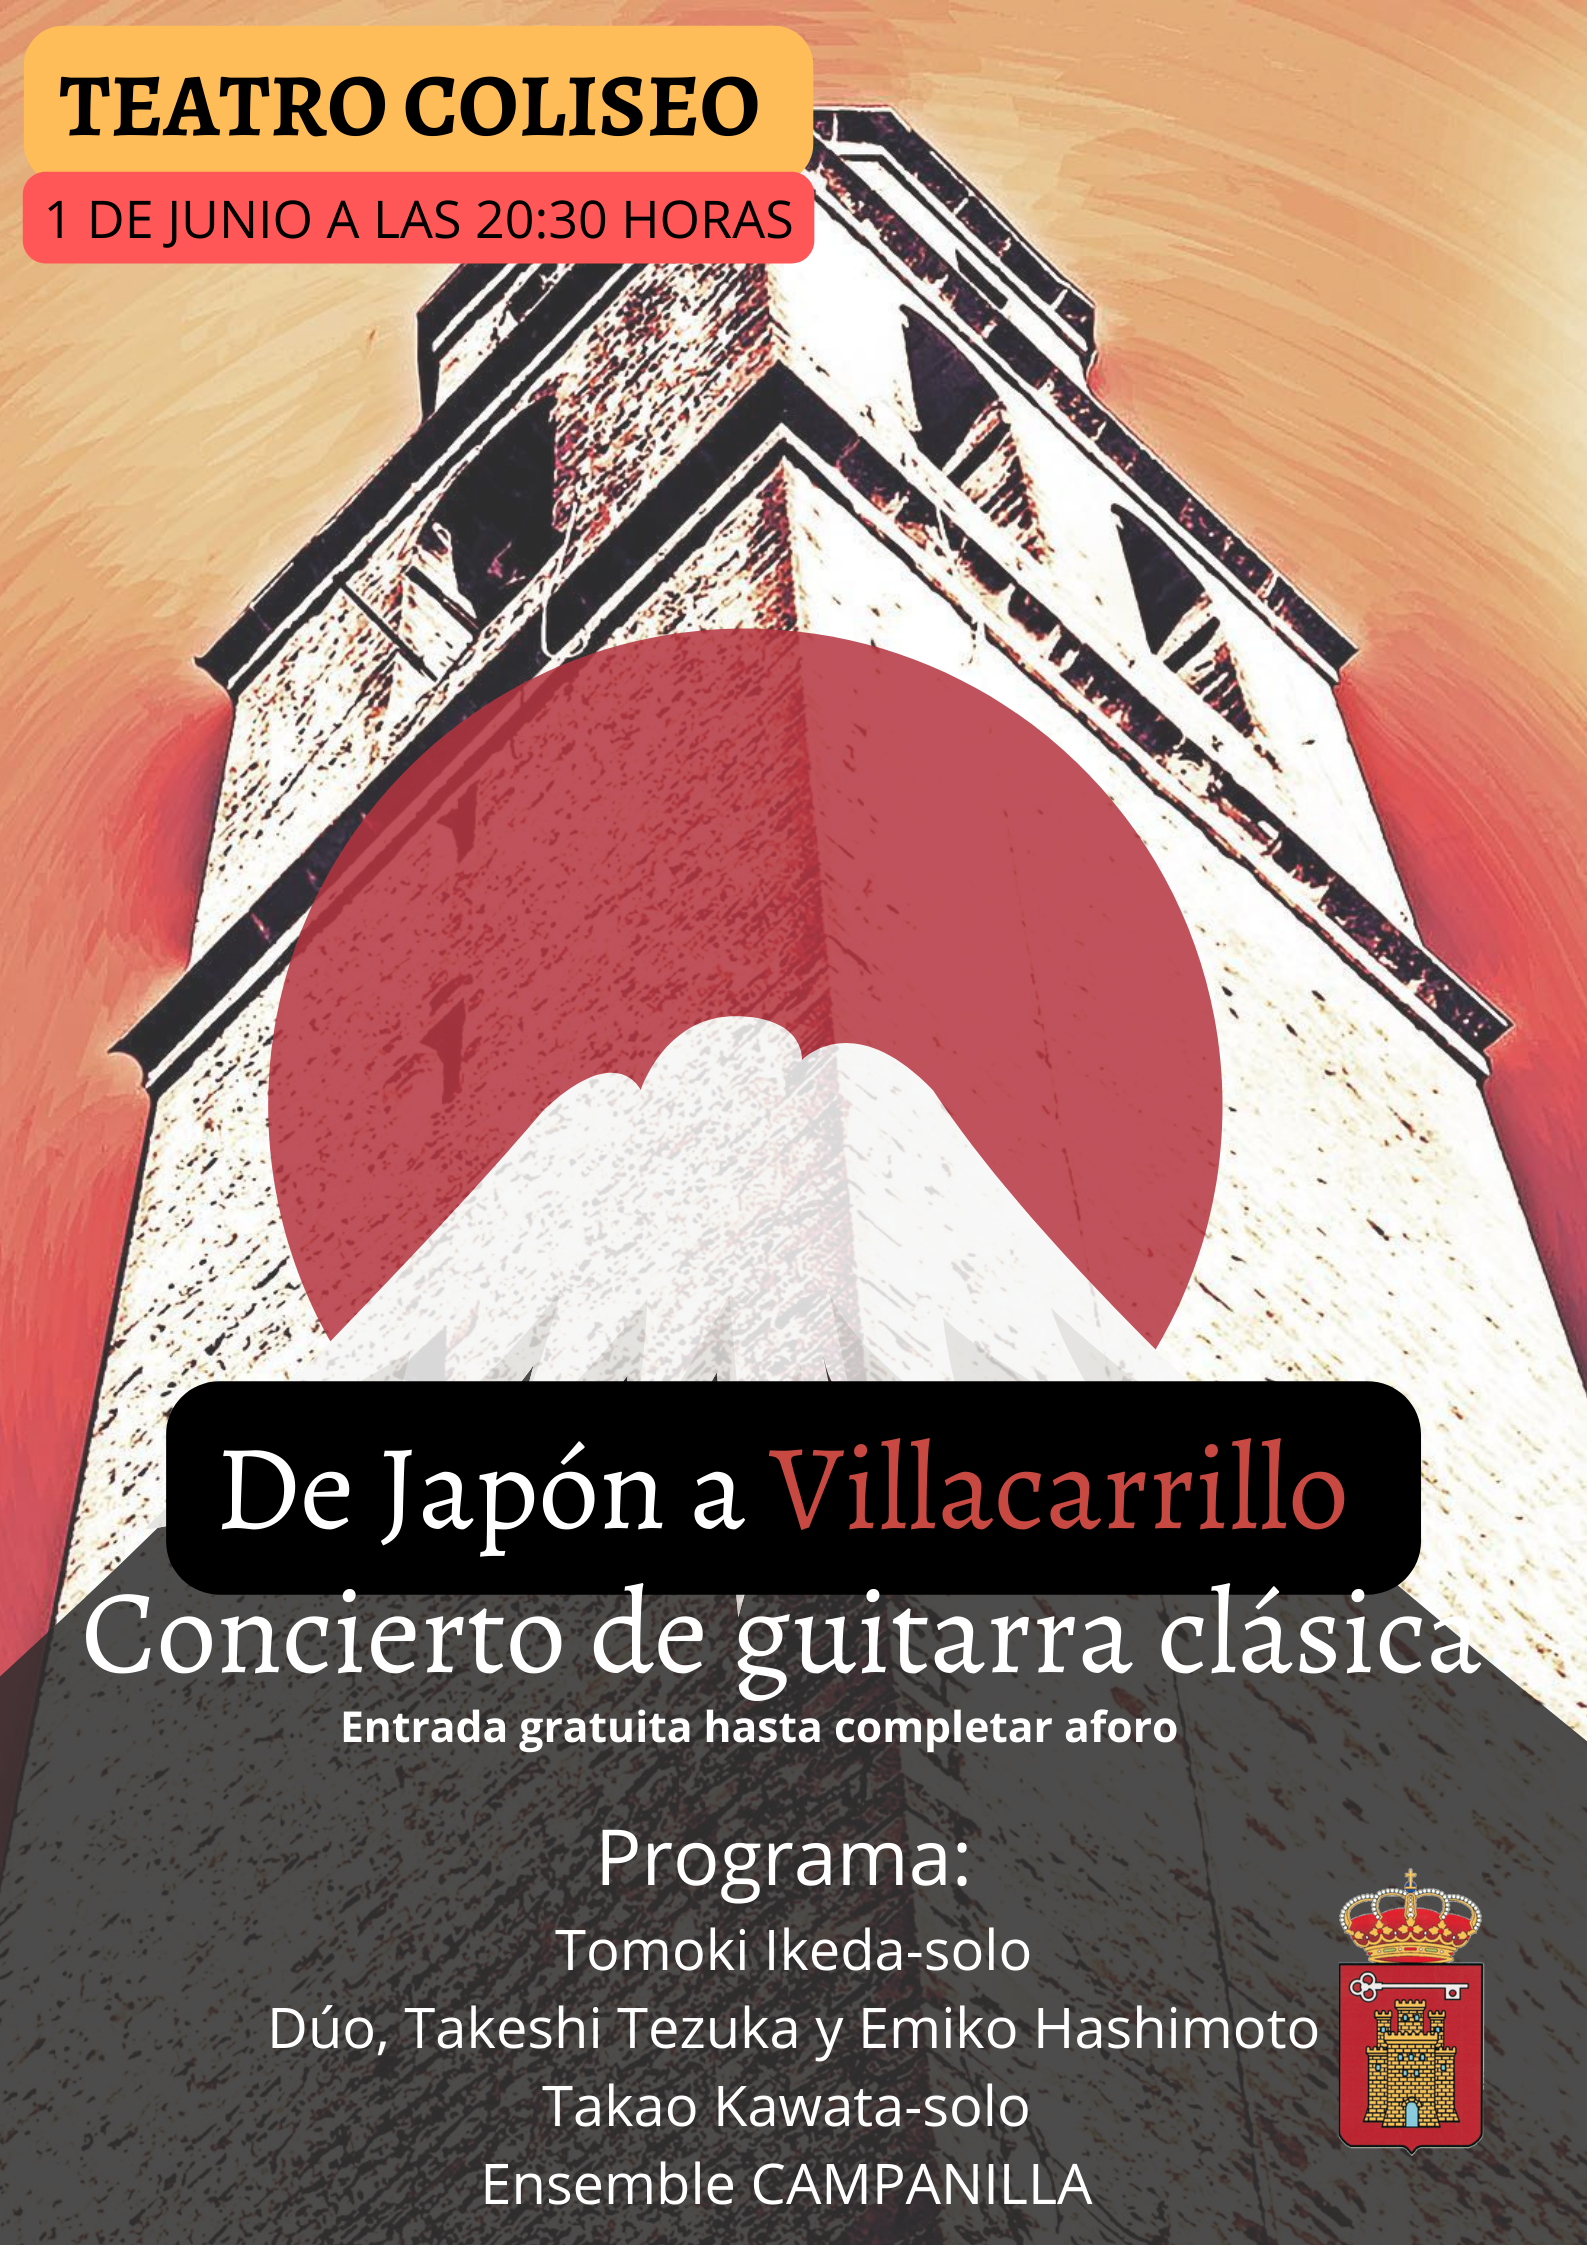 De Japón a Villacarrillo con una maleta llena de guitarras